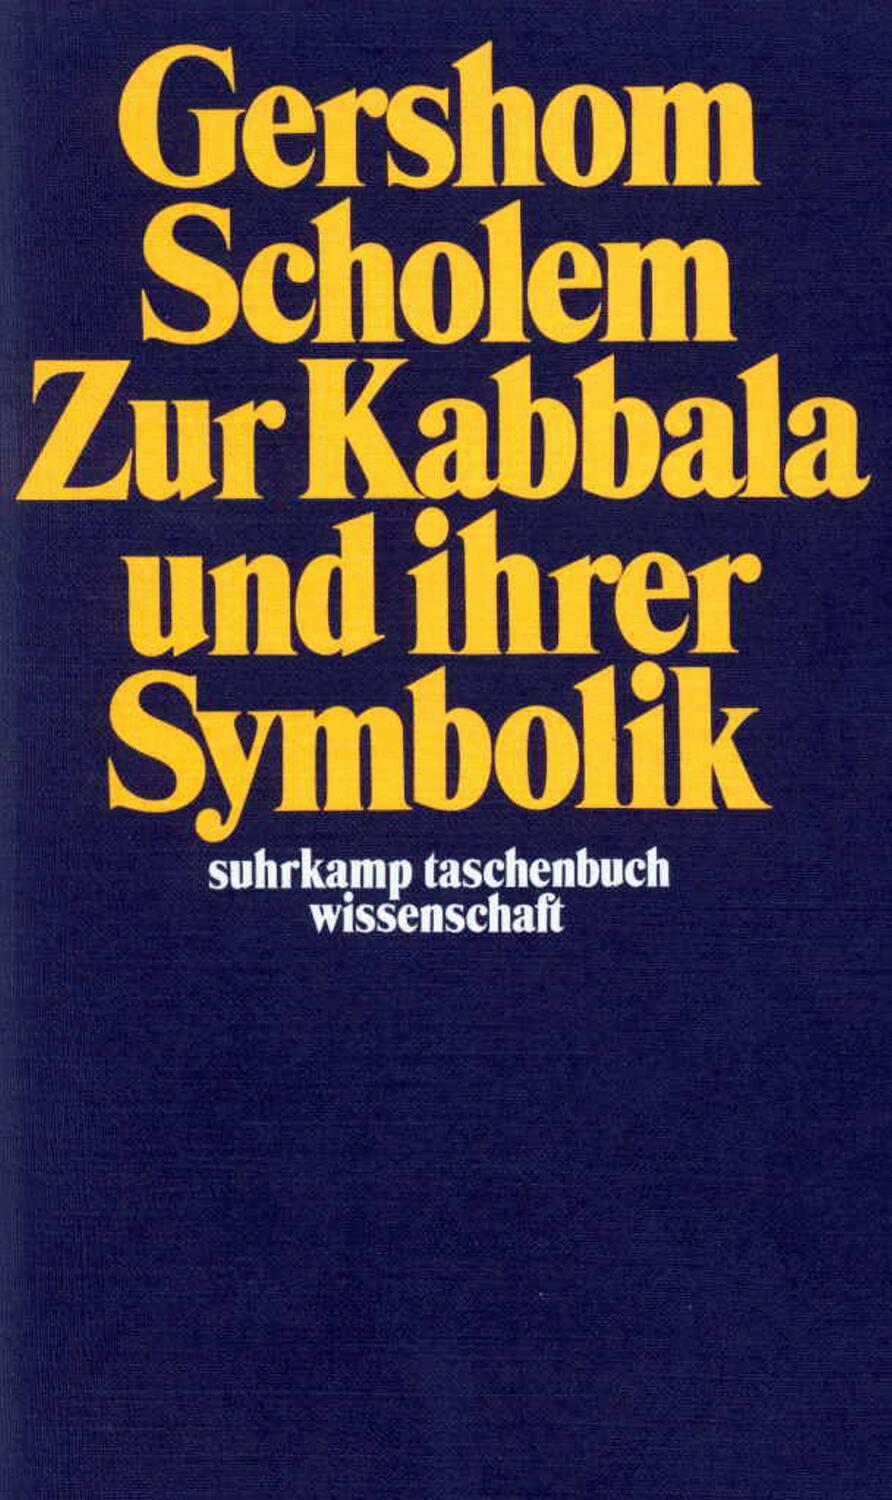 Zur Kabbala und ihrer Symbolik - Scholem, Gershom